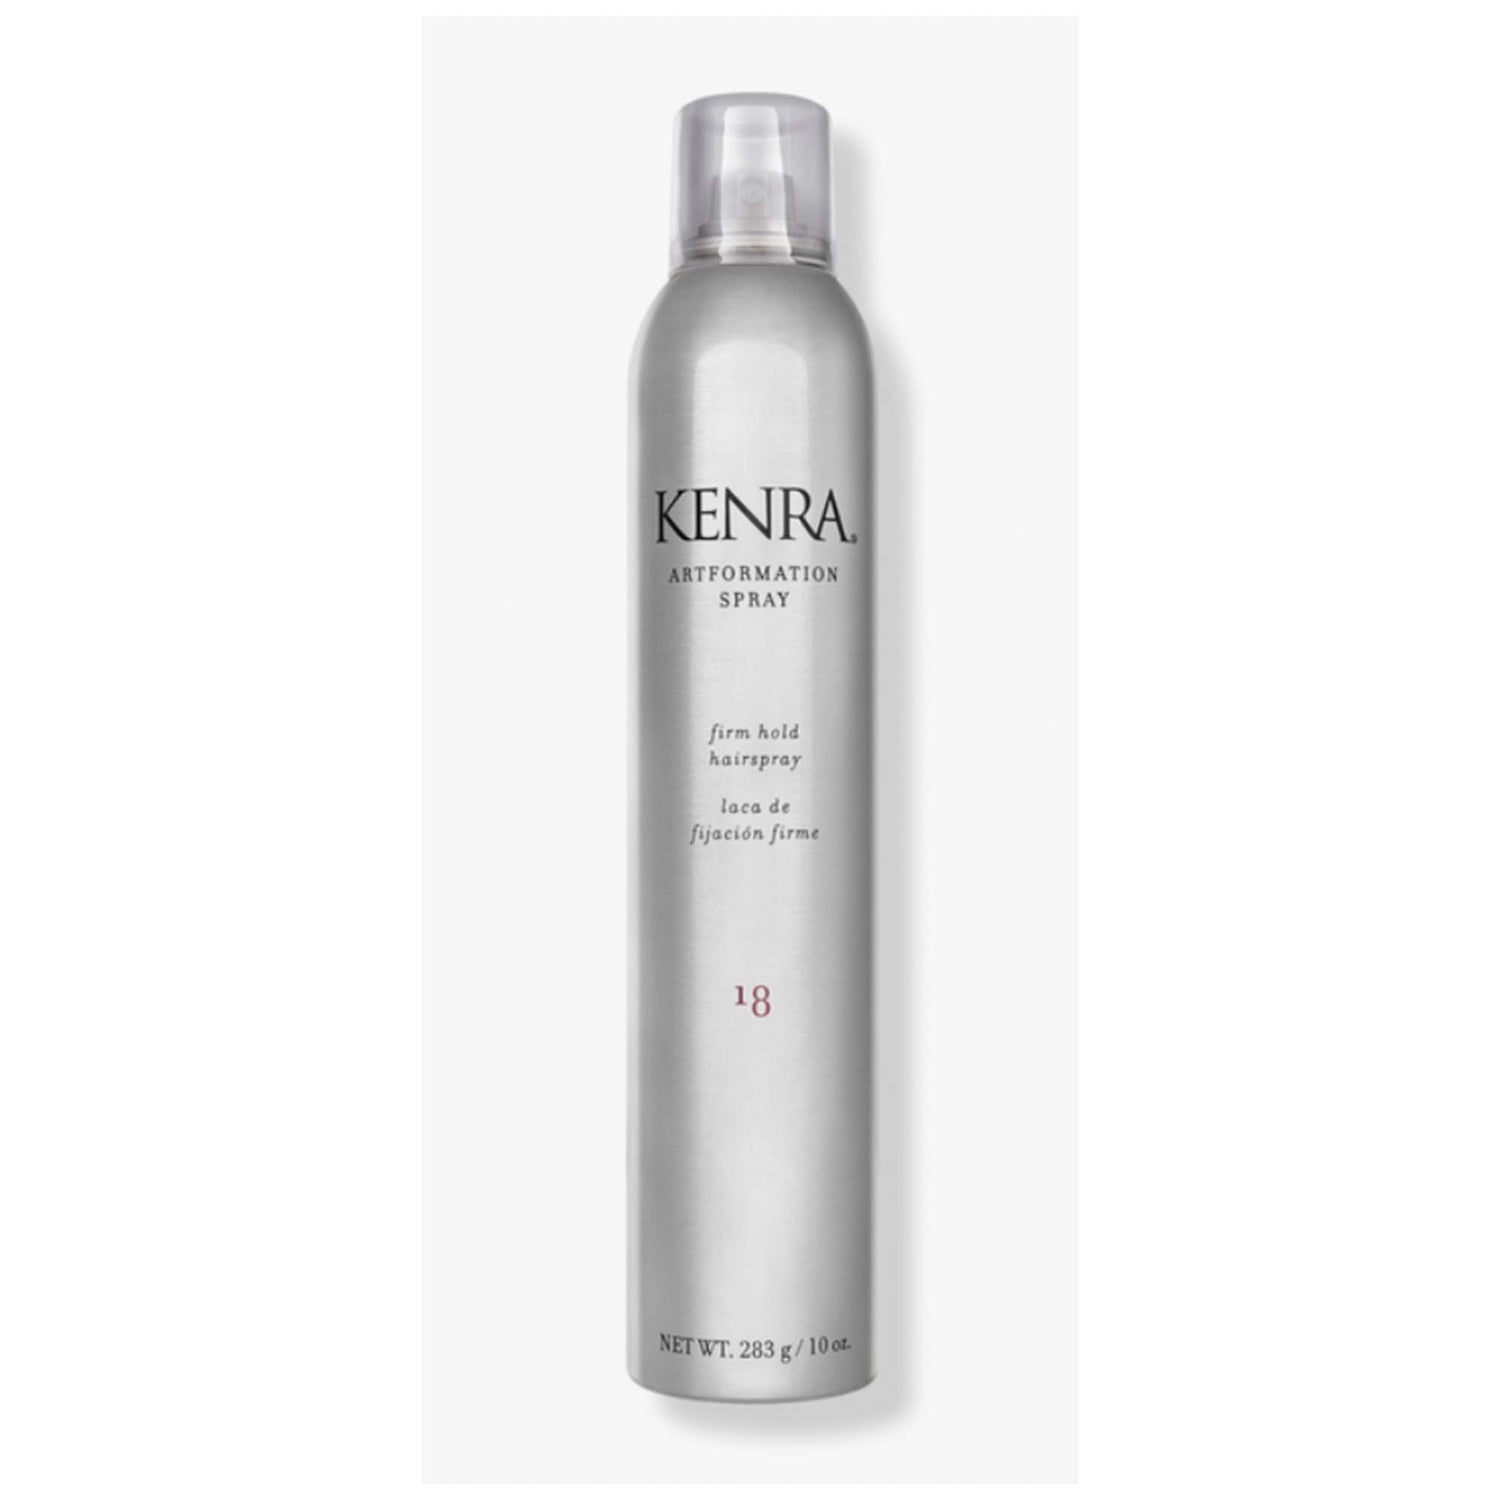 Kenra Artformation Firm Hold Hair Spray 